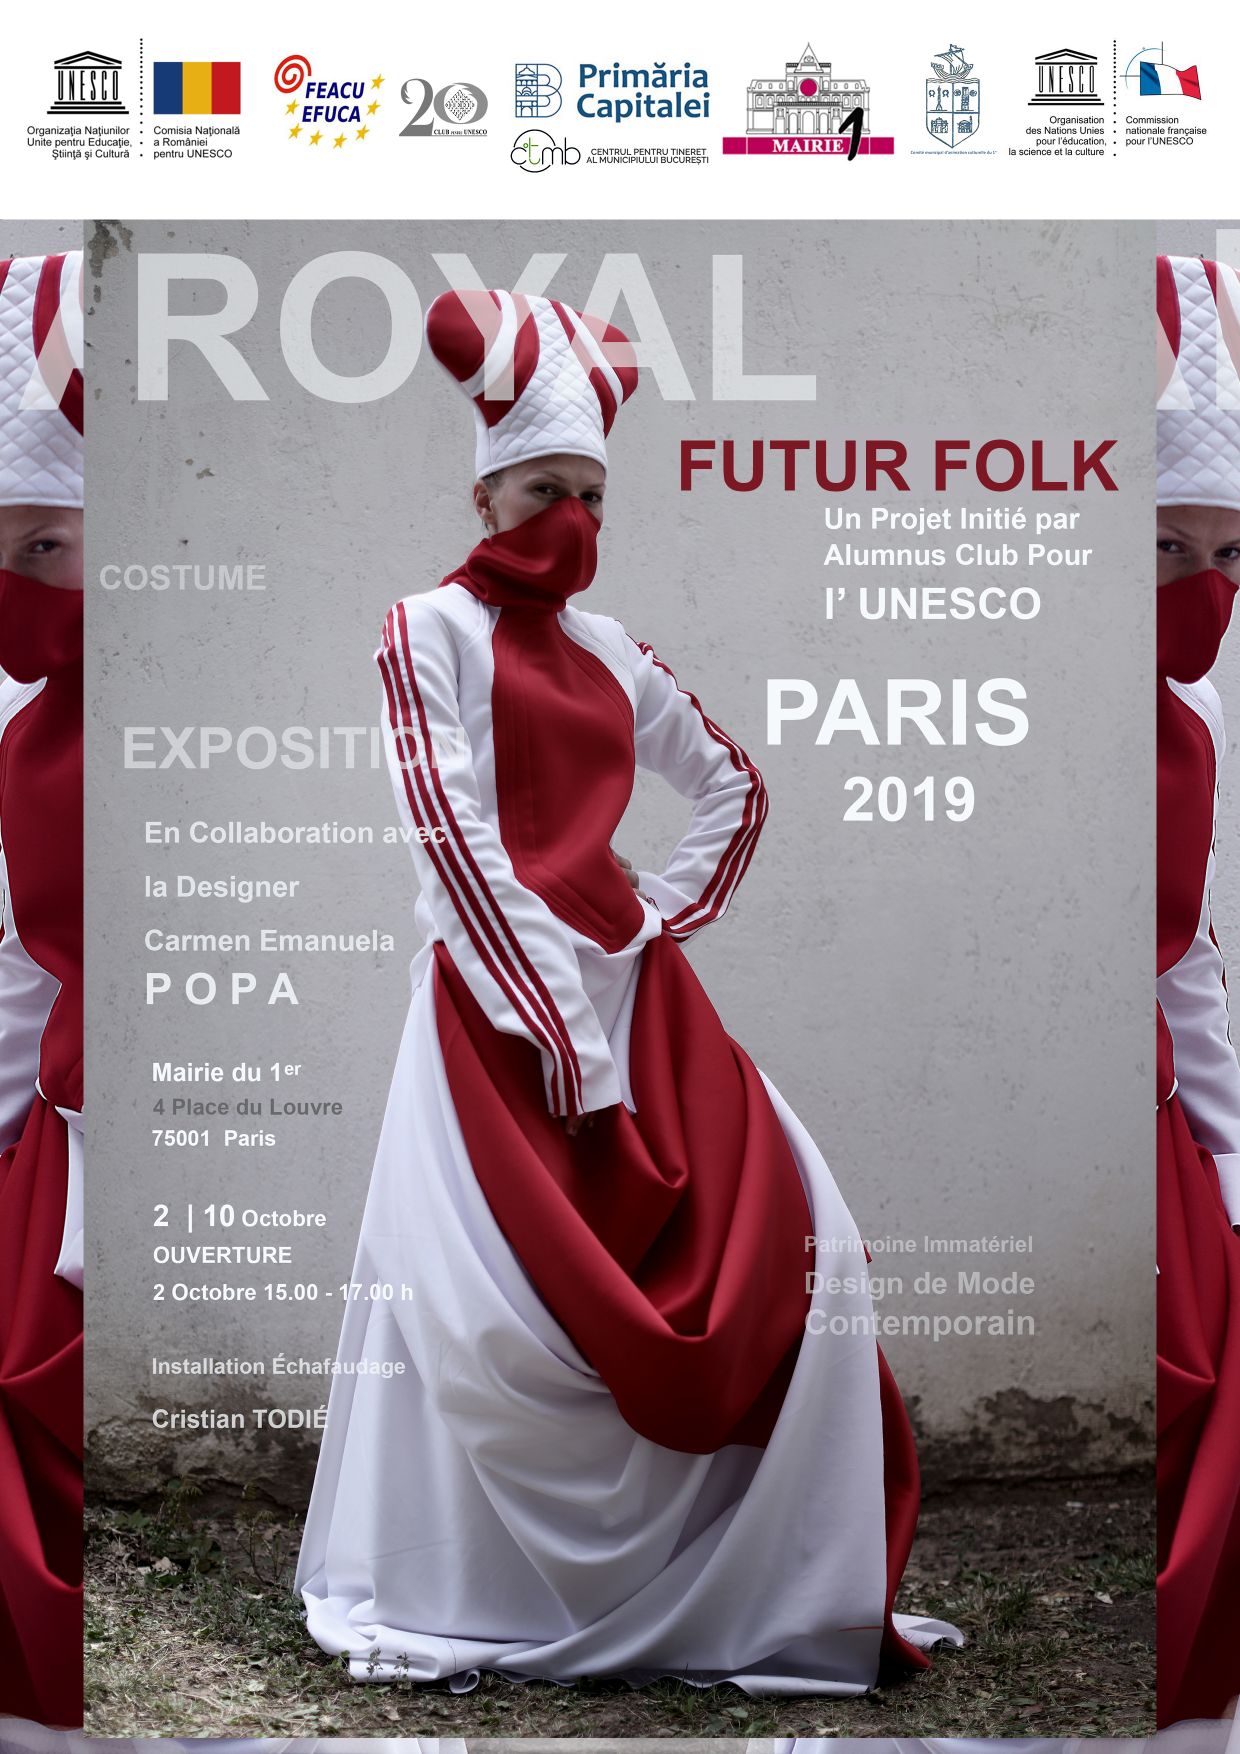 Expoziția de design vestimentar “Futur Folk. Costume Royal” by Carmen Emanuela Popa se dezvăluie la Paris în perioada 2 – 10 octombrie